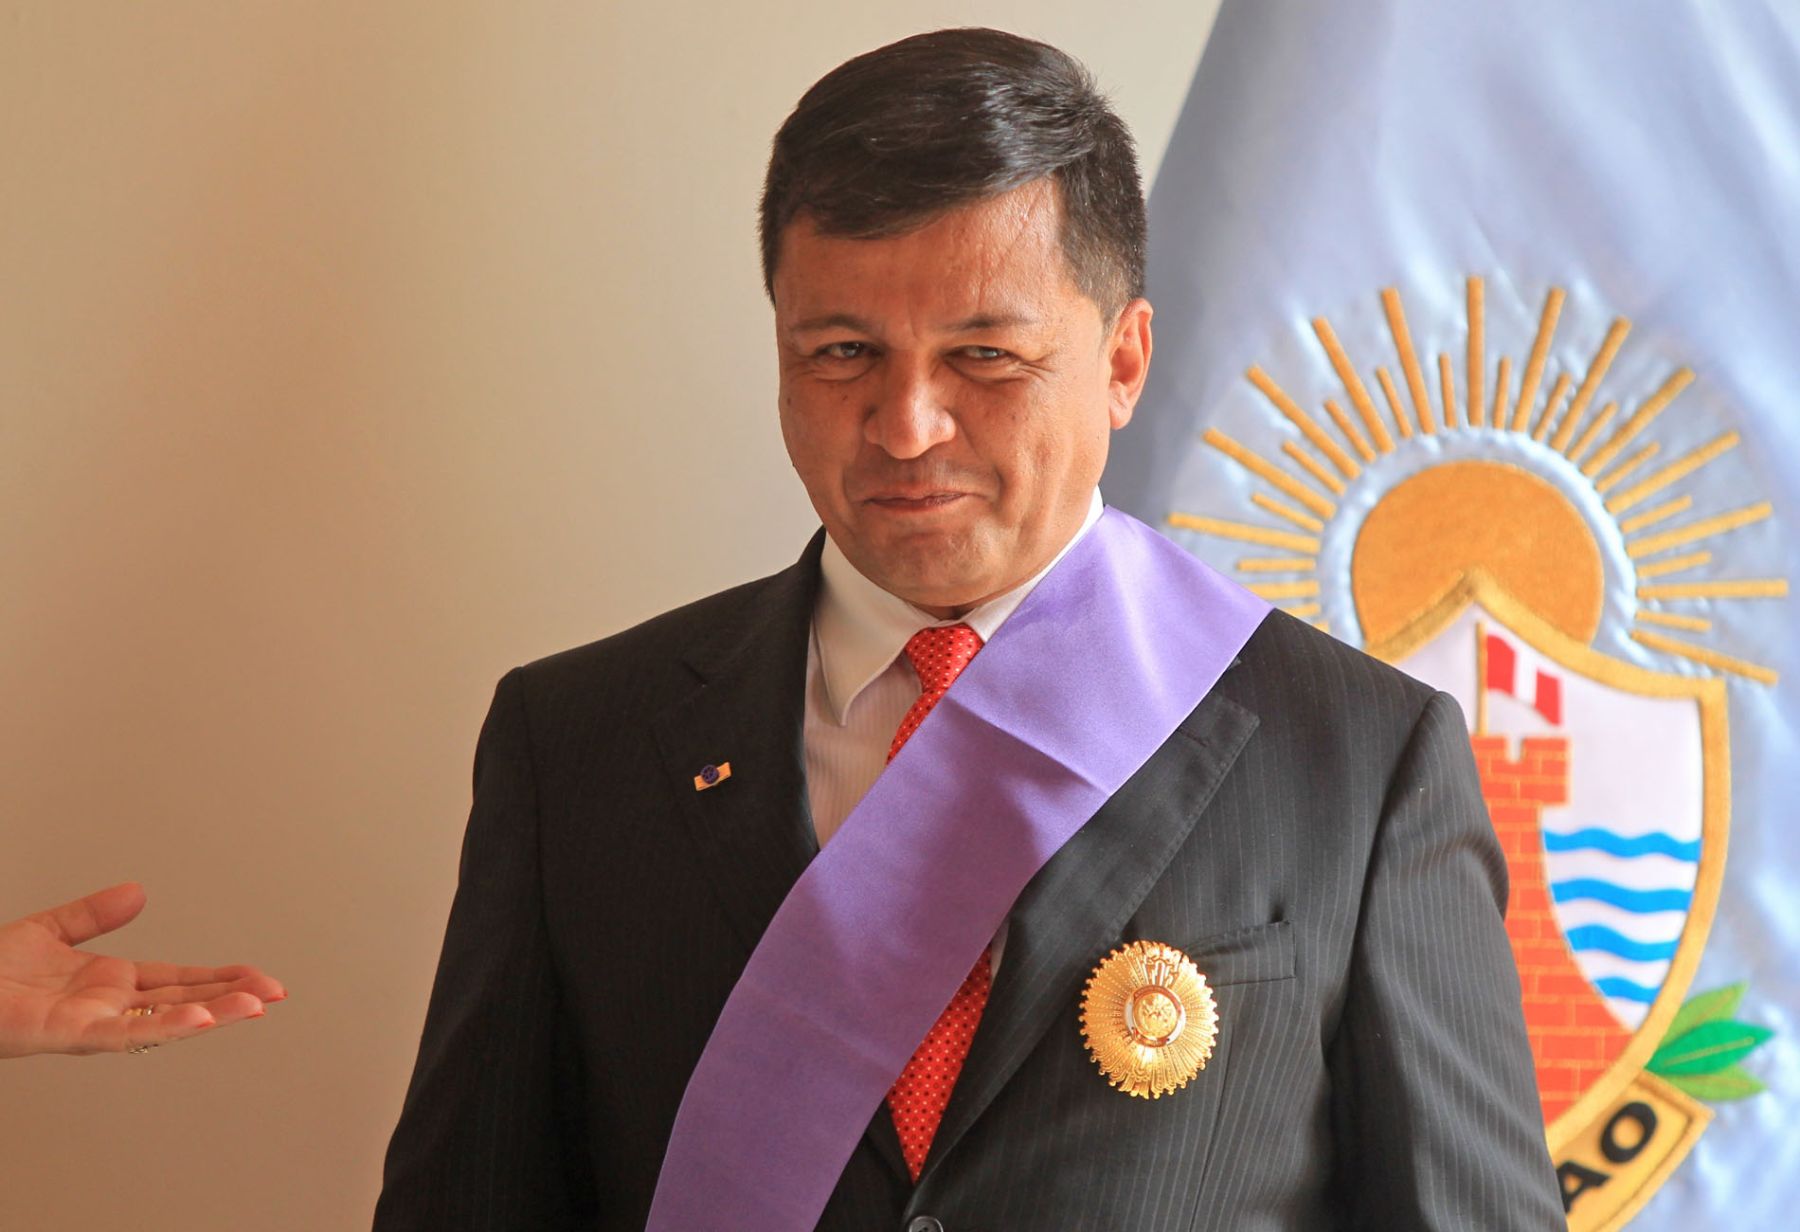 El alcalde del Callao, Juan Sotomayor García, es condecorado por la jefa del Gabinete, Rosario Fernández Figueroa. Foto: ANDINA/Carlos Lezama.